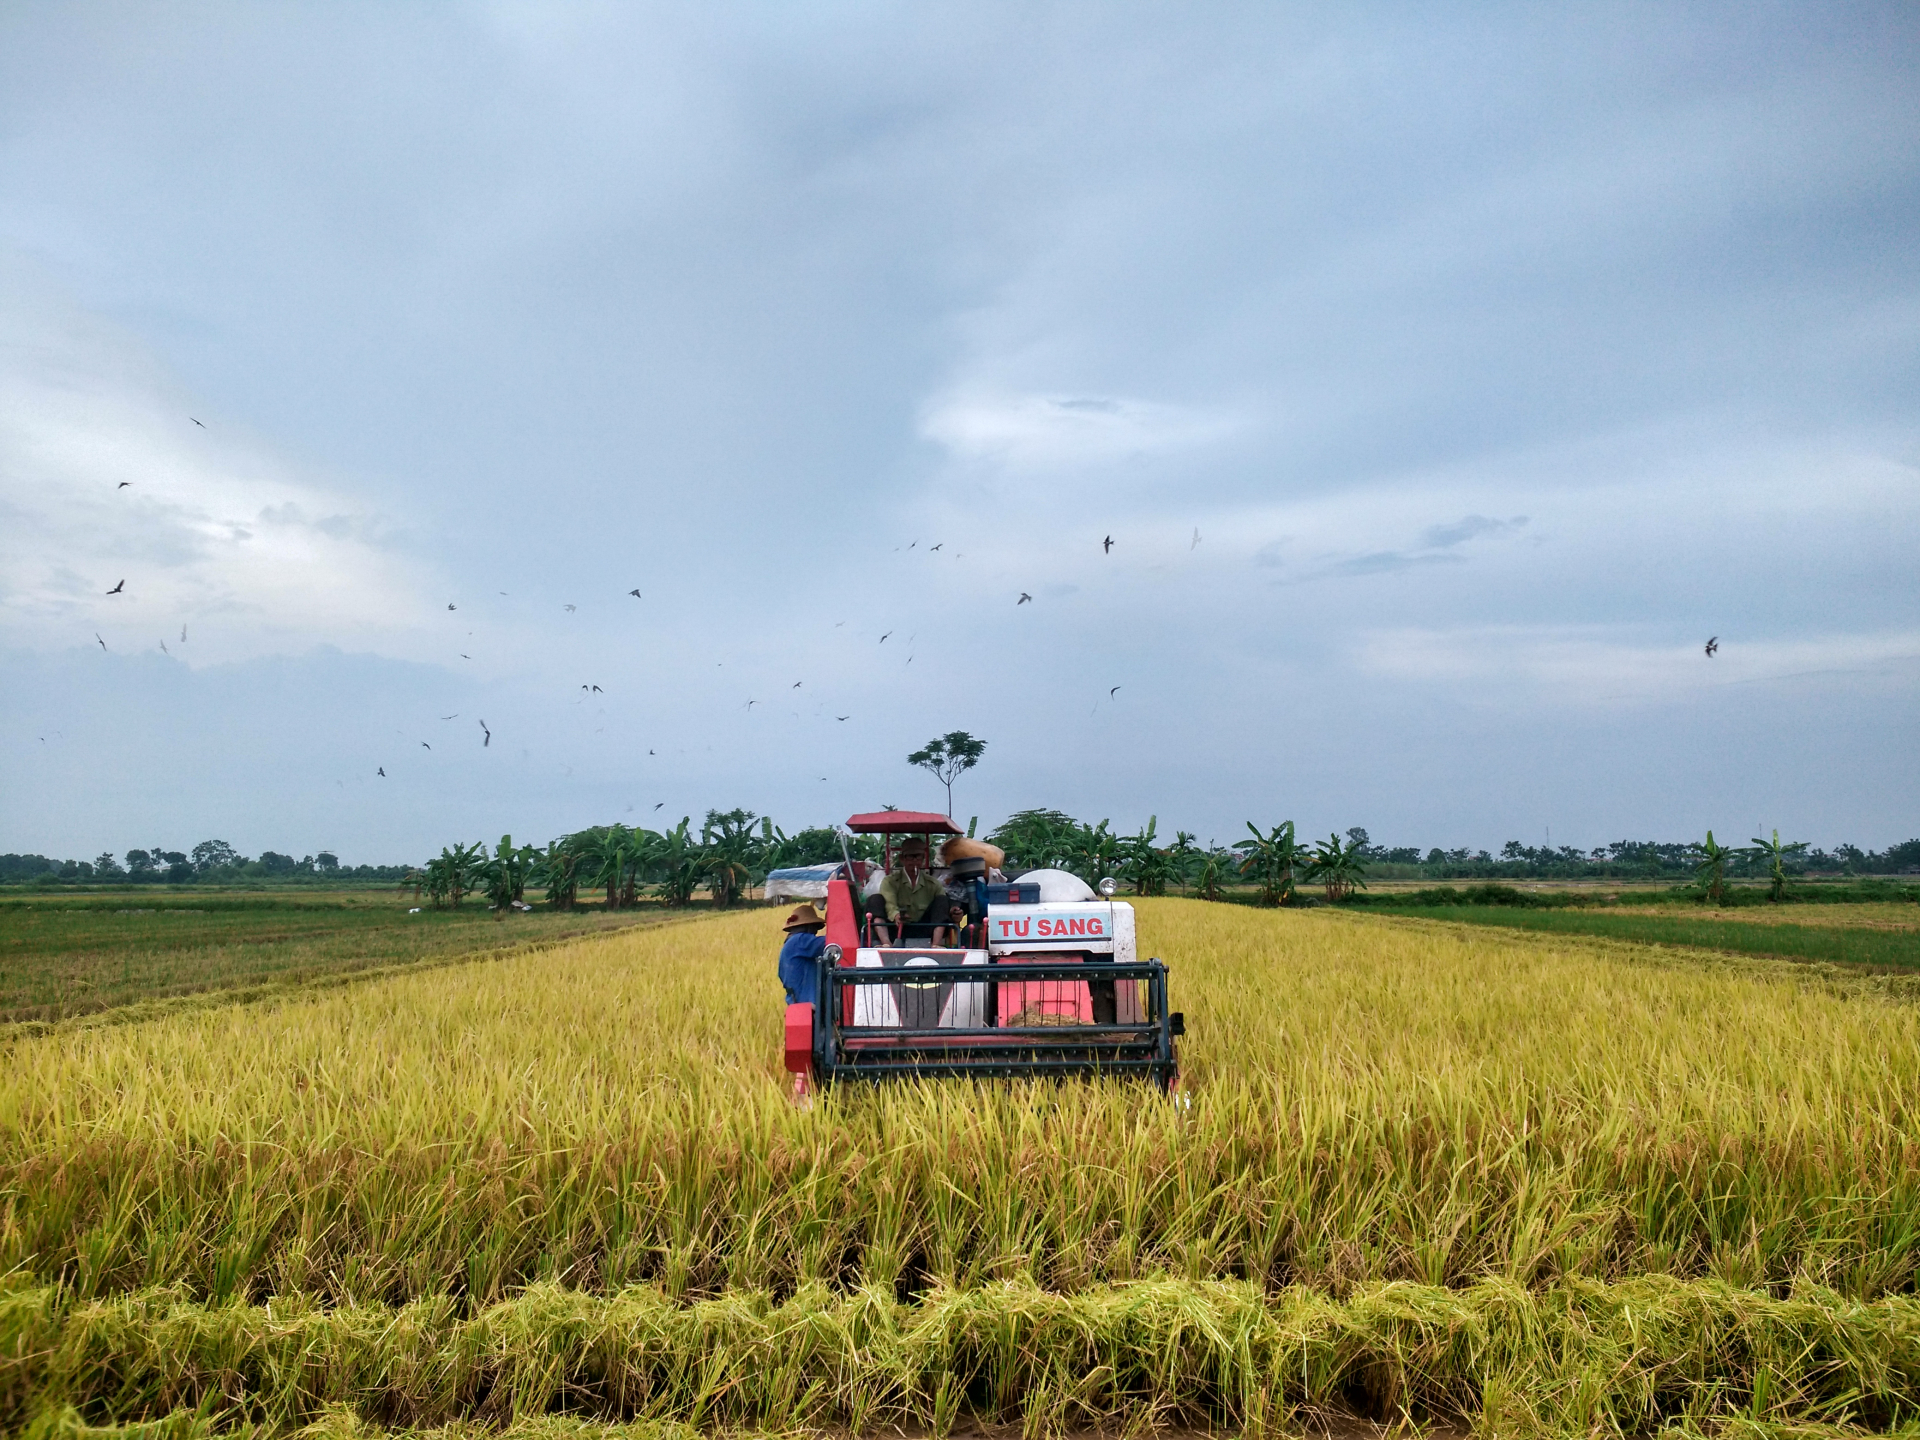 Vài năm trở lại đây, những chiếc máy gặt đã dần thay thế việc gặt tay của người nông dân. Tại xã Châu Giang (Duy Tiên, Hà Nam) có tới 70% diện tích lúa được gặt bằng máy.